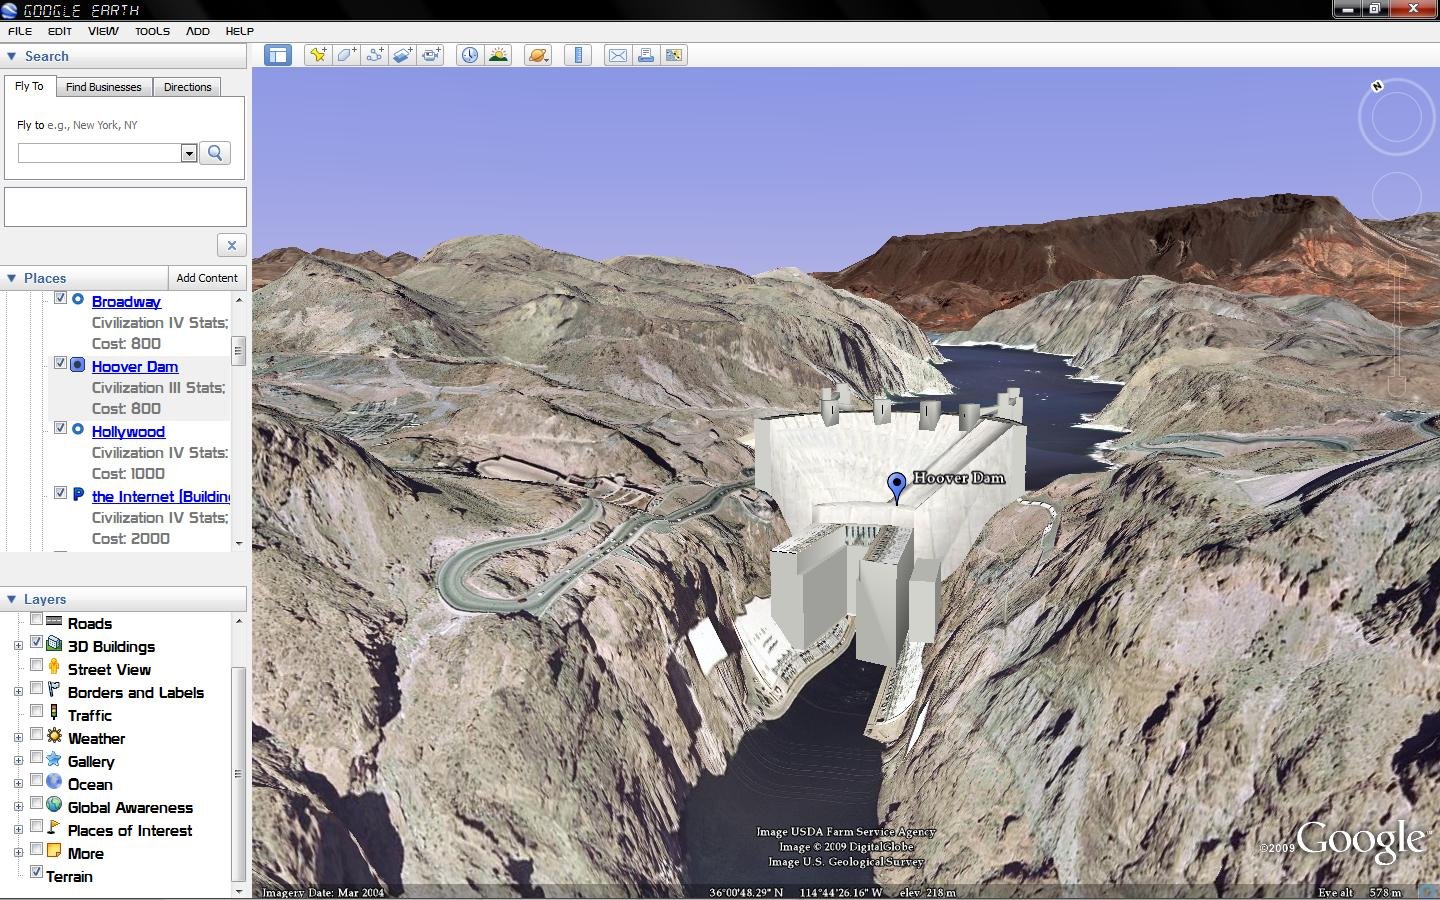 Googleciv - Hoover Dam